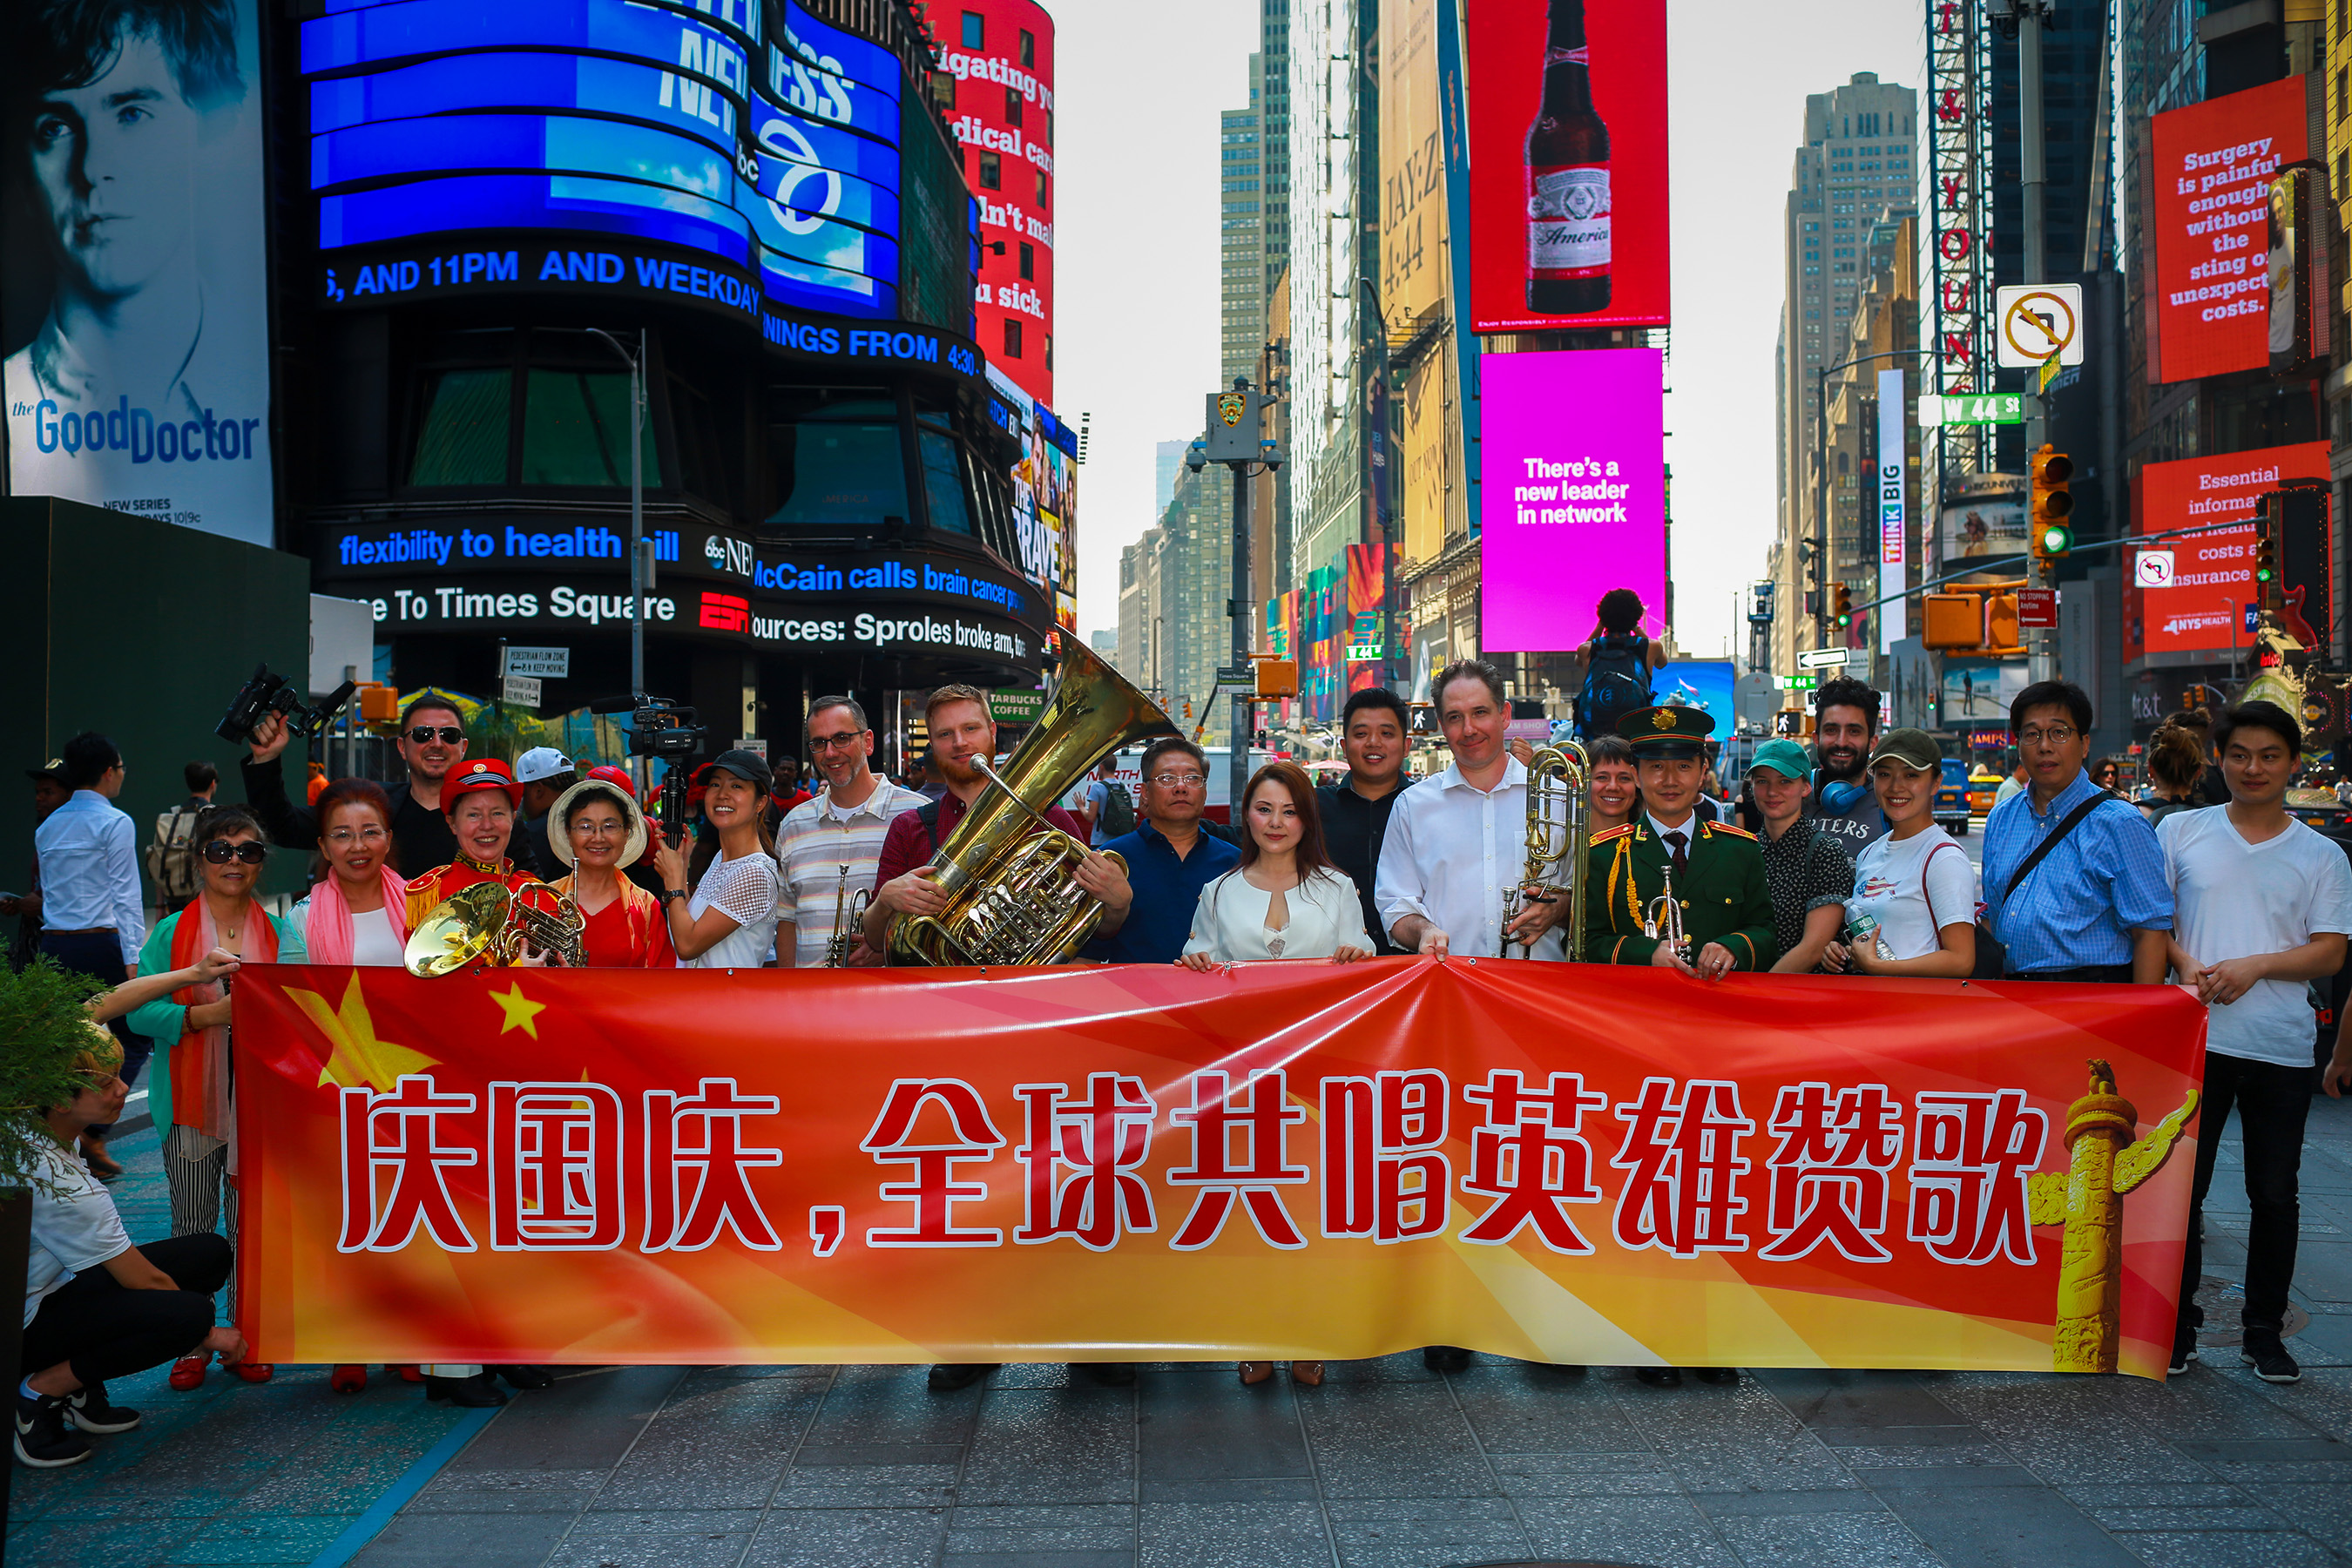 Nanchang Heroic Music Flashmob at Times Square NYC.